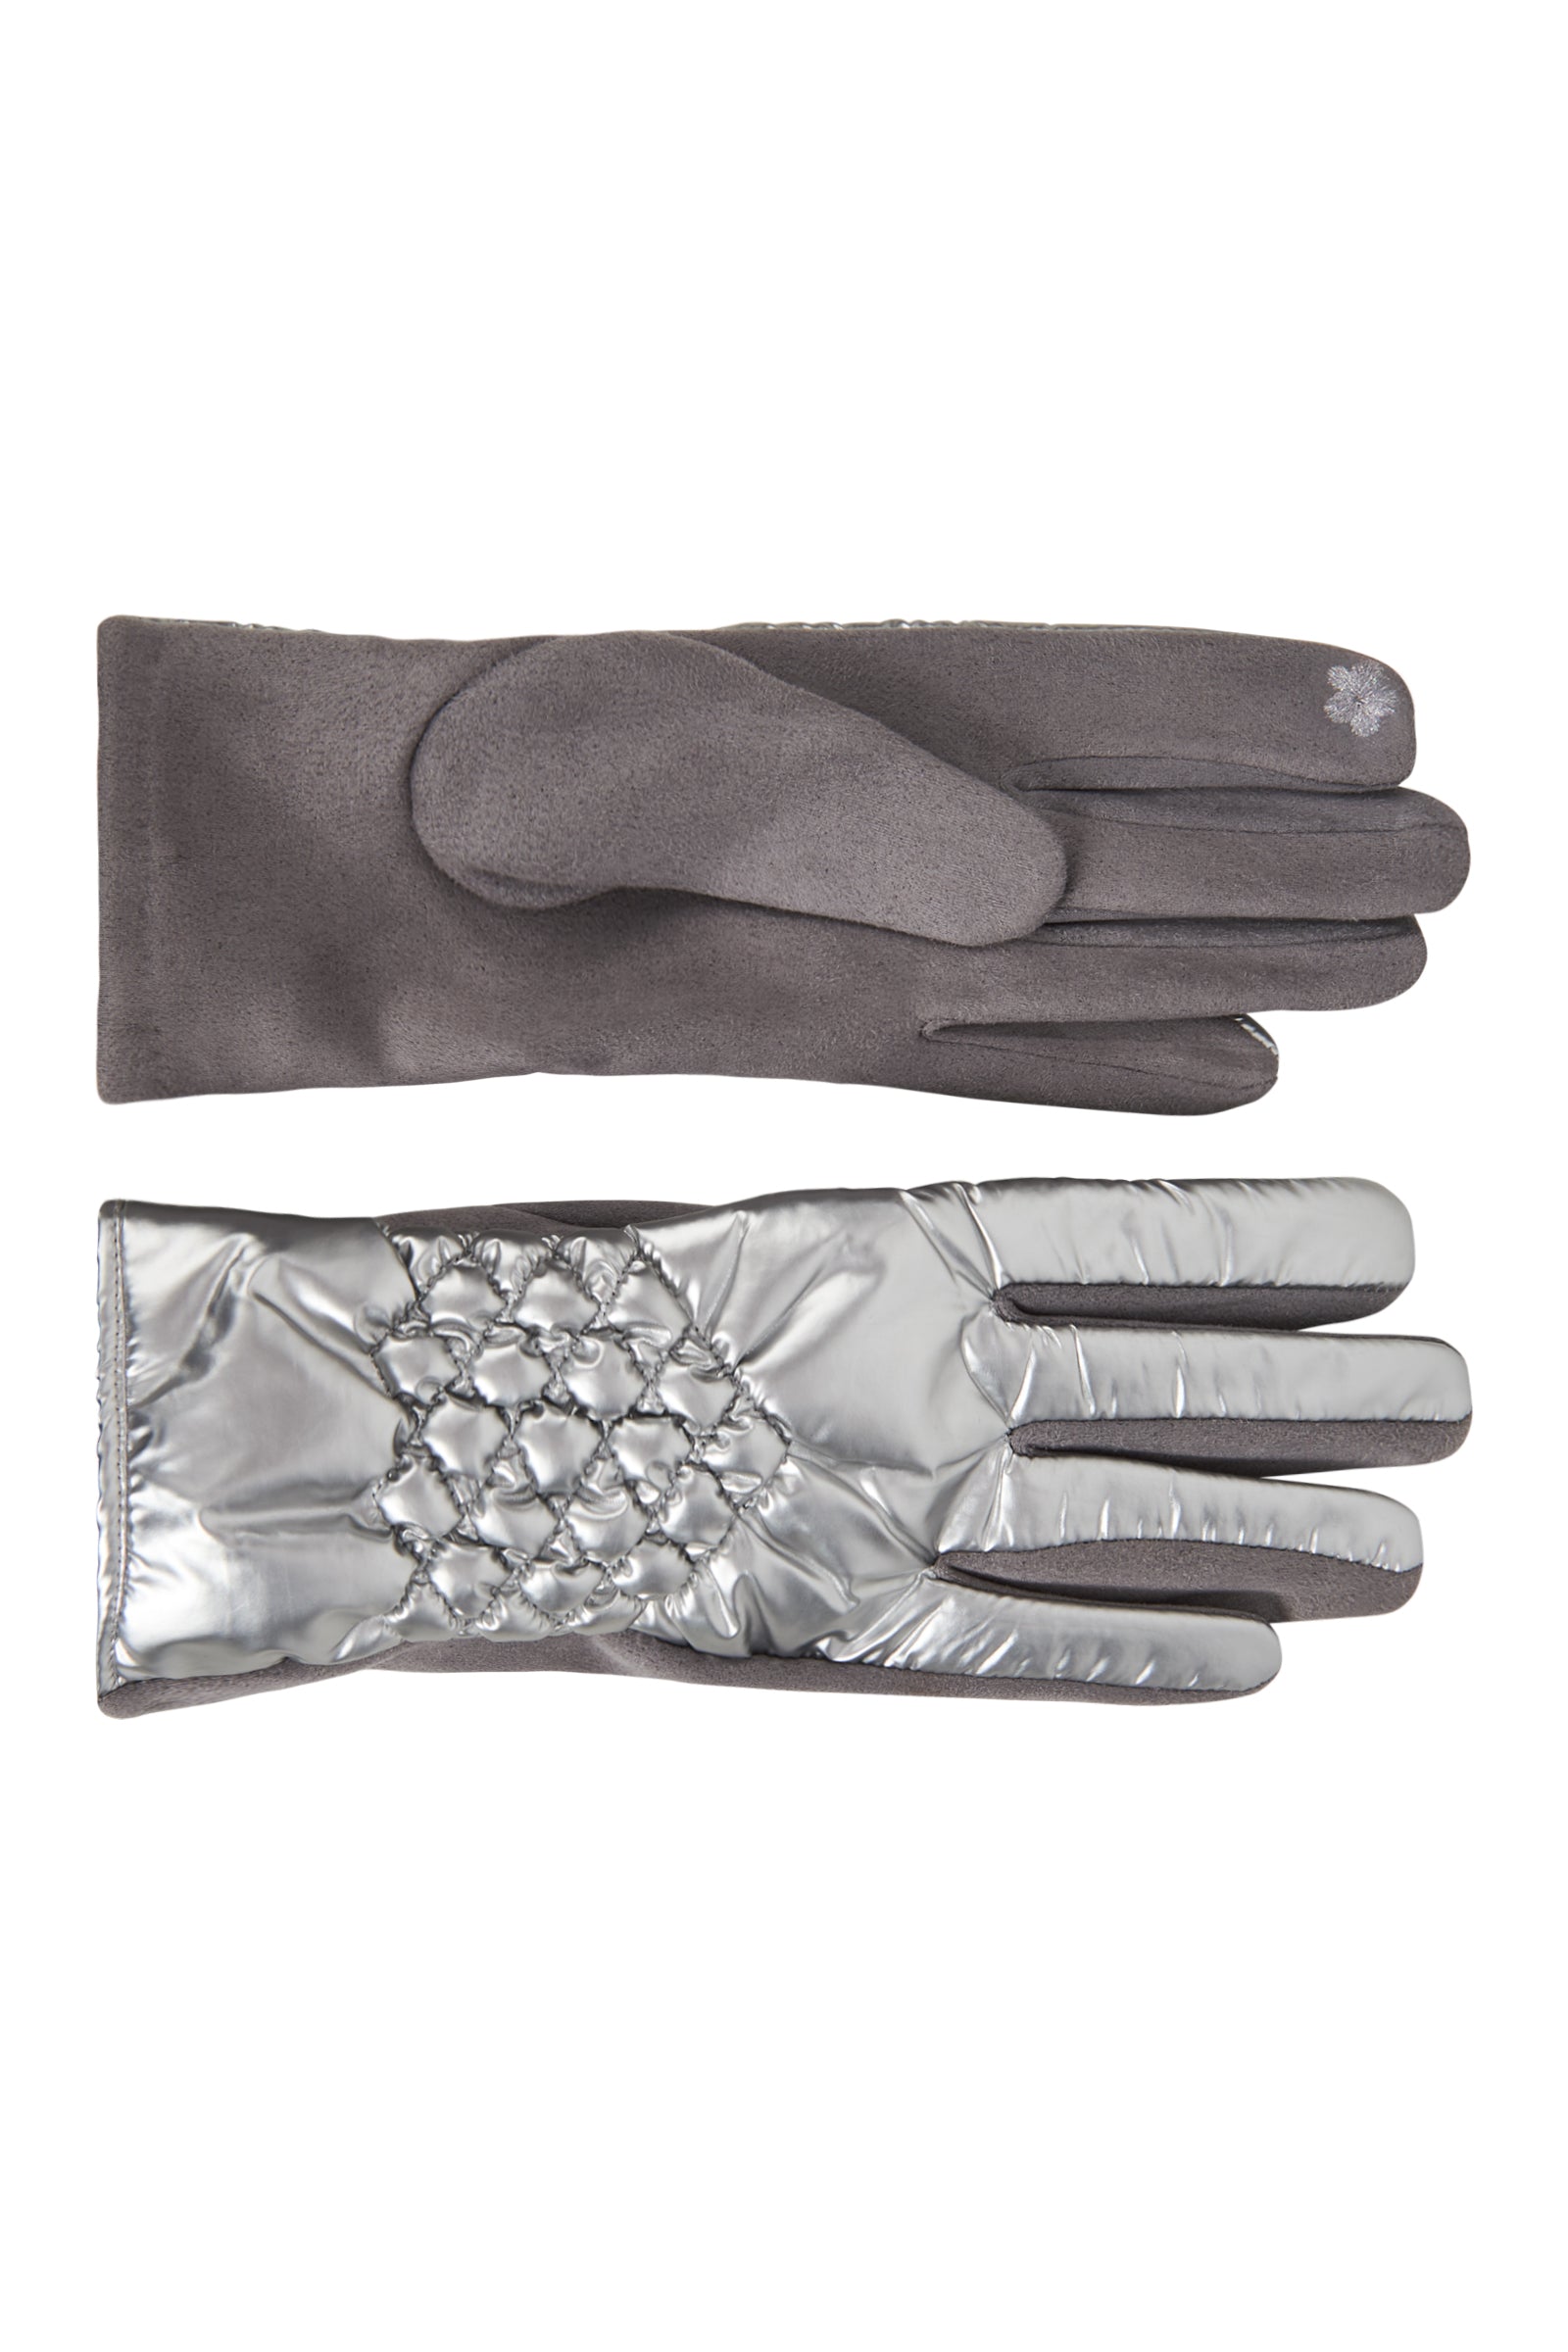 Nawi Glove - Silver - eb&ive Glove